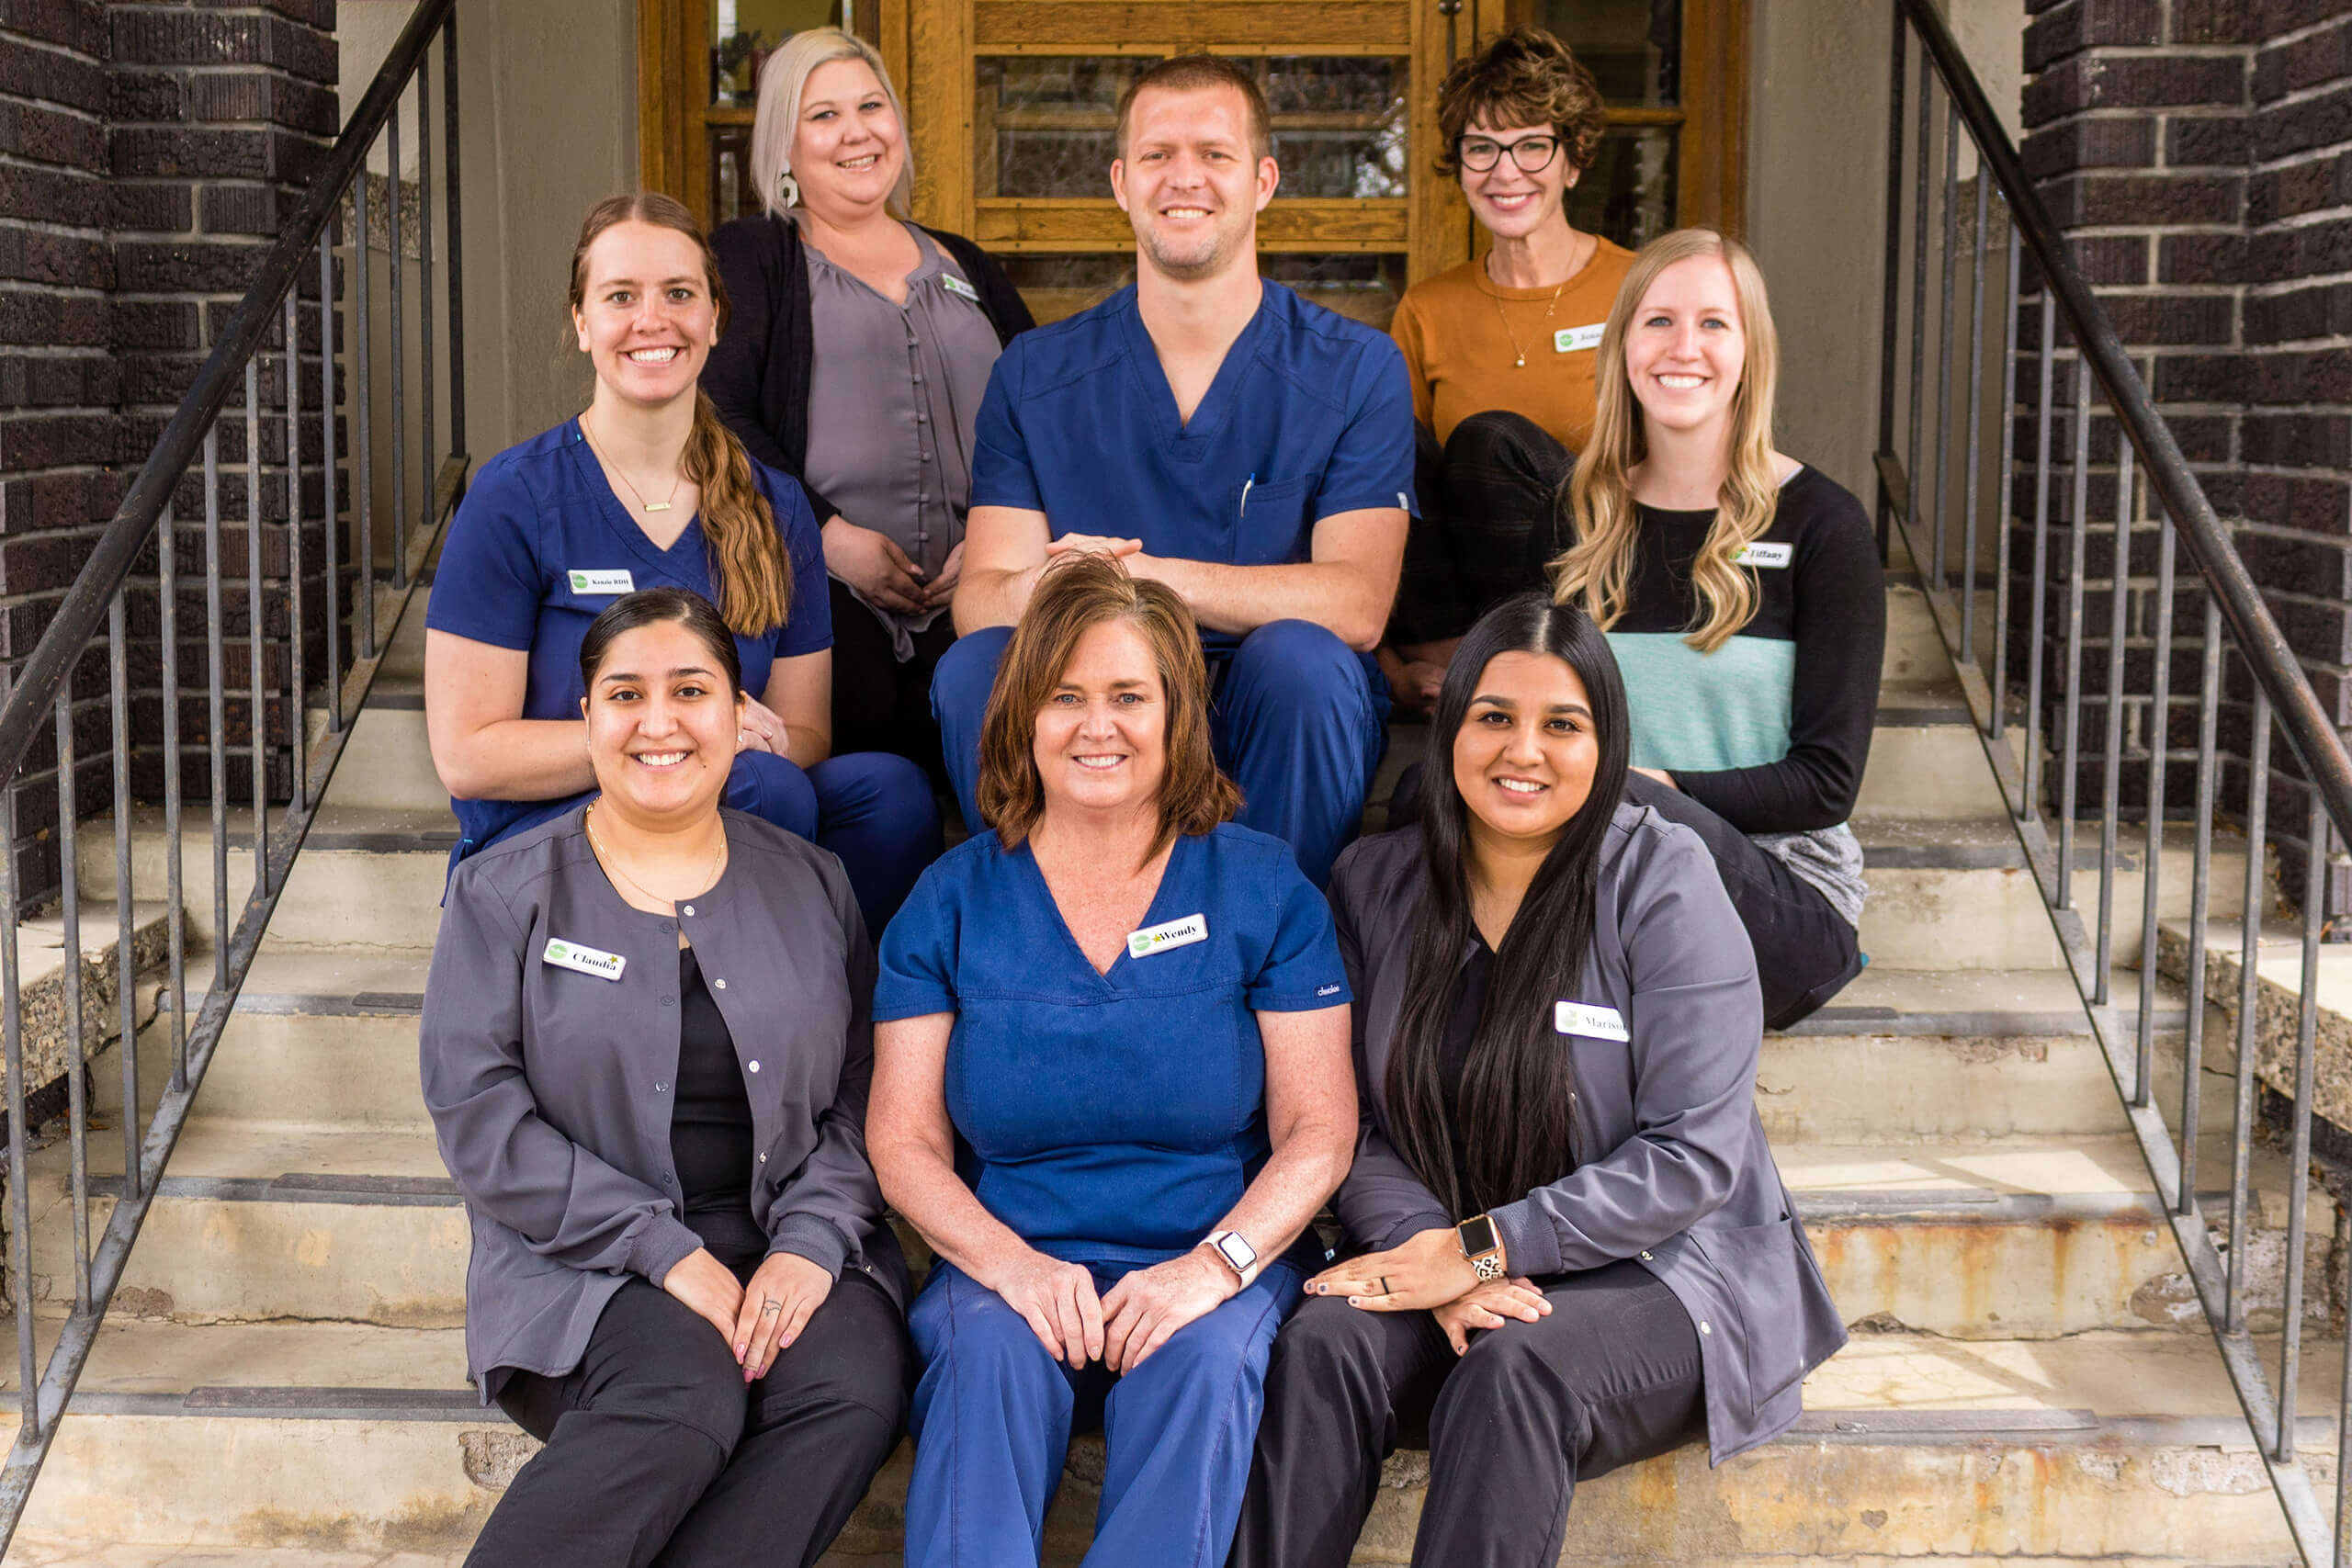 Dentist in Logan, Dr. Tanner Hunsaker and his dental team group photo at Midtown Dental in Logan, Utah